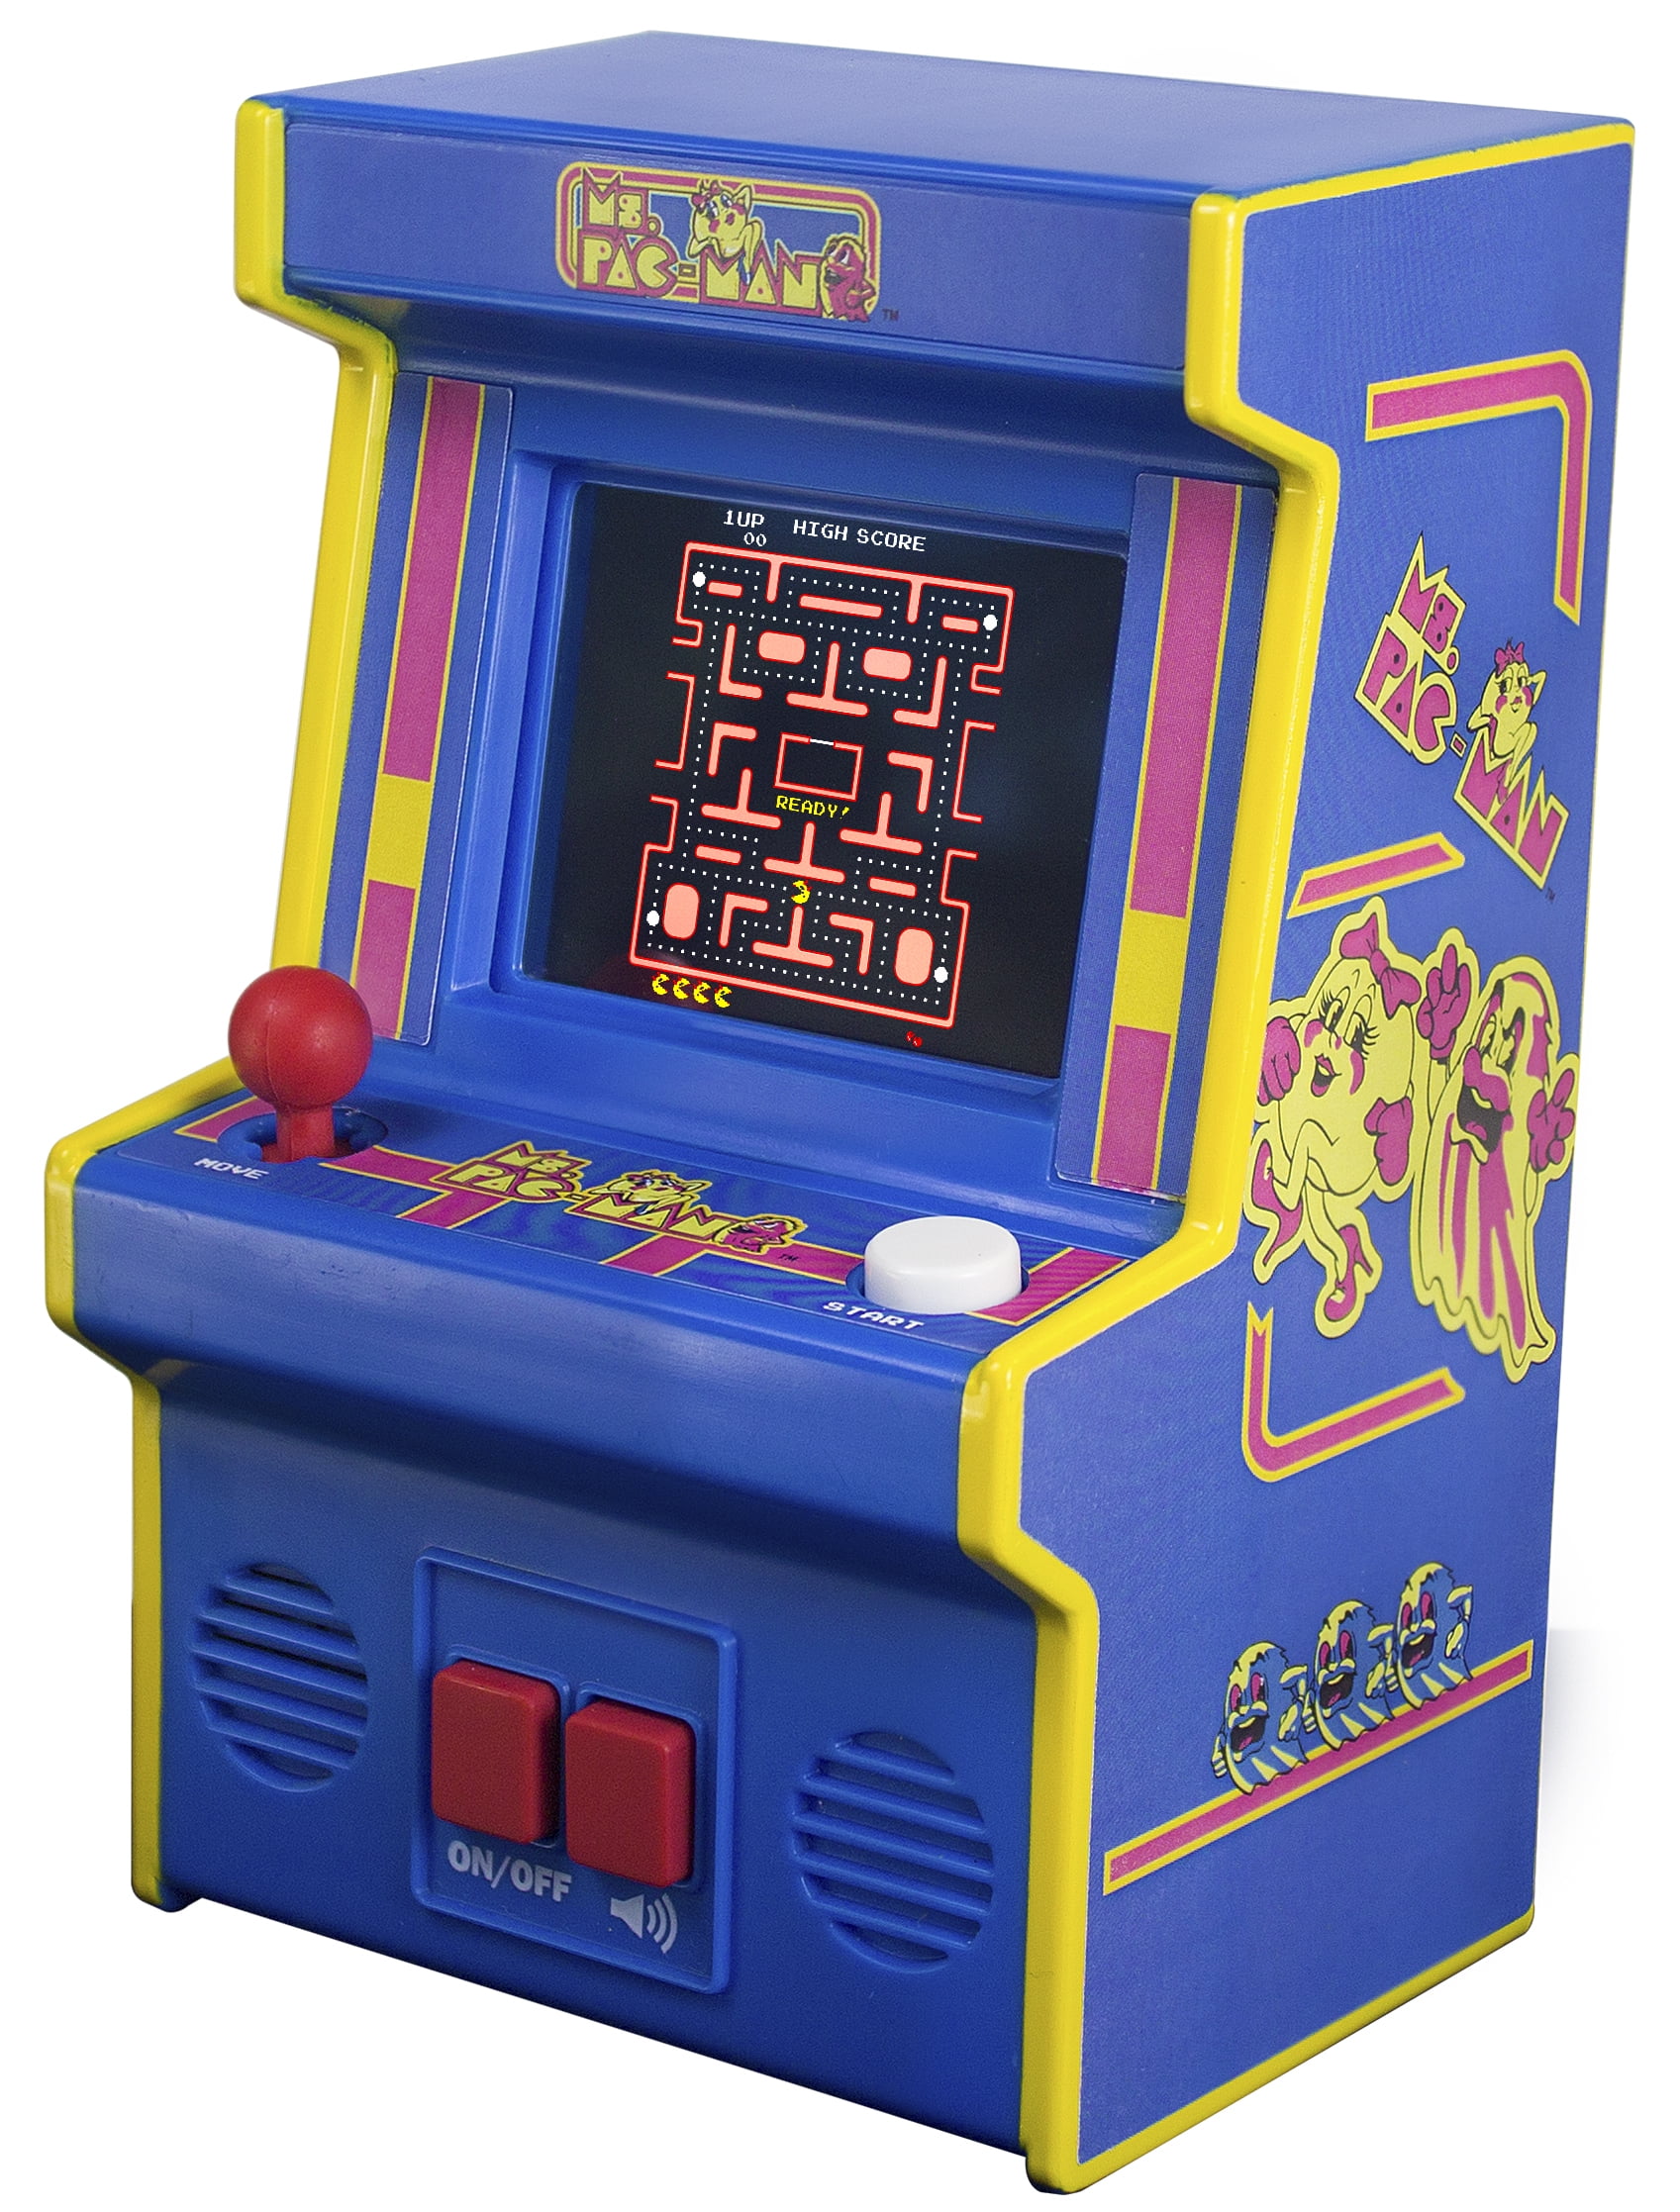 ms pac man electronic arcade game